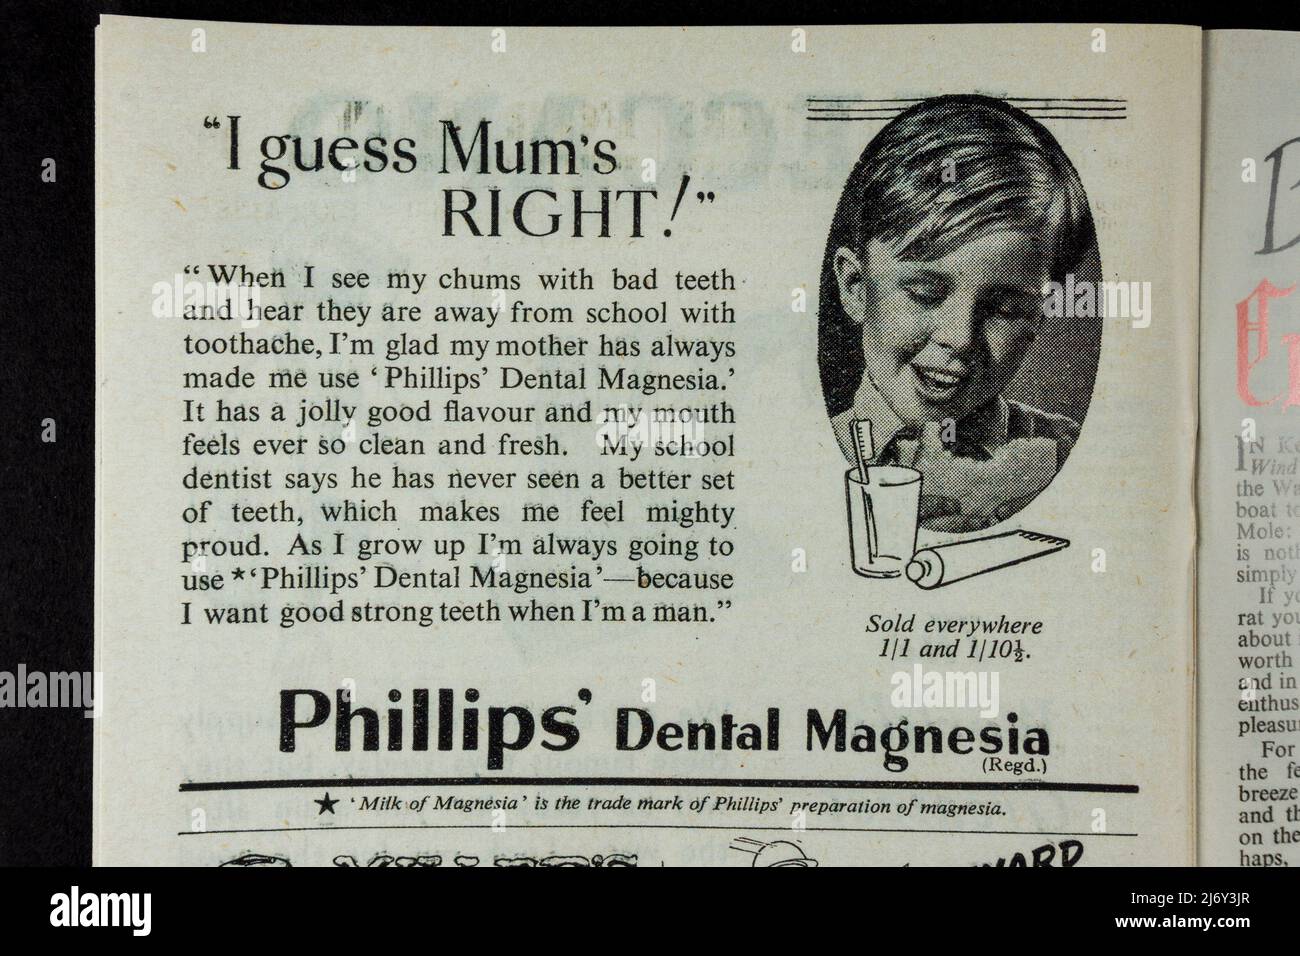 Publicité pour 'Phillips' Dental Magnésie' dans des souvenirs (réplique) relatifs aux enfants pendant la Seconde Guerre mondiale. Banque D'Images